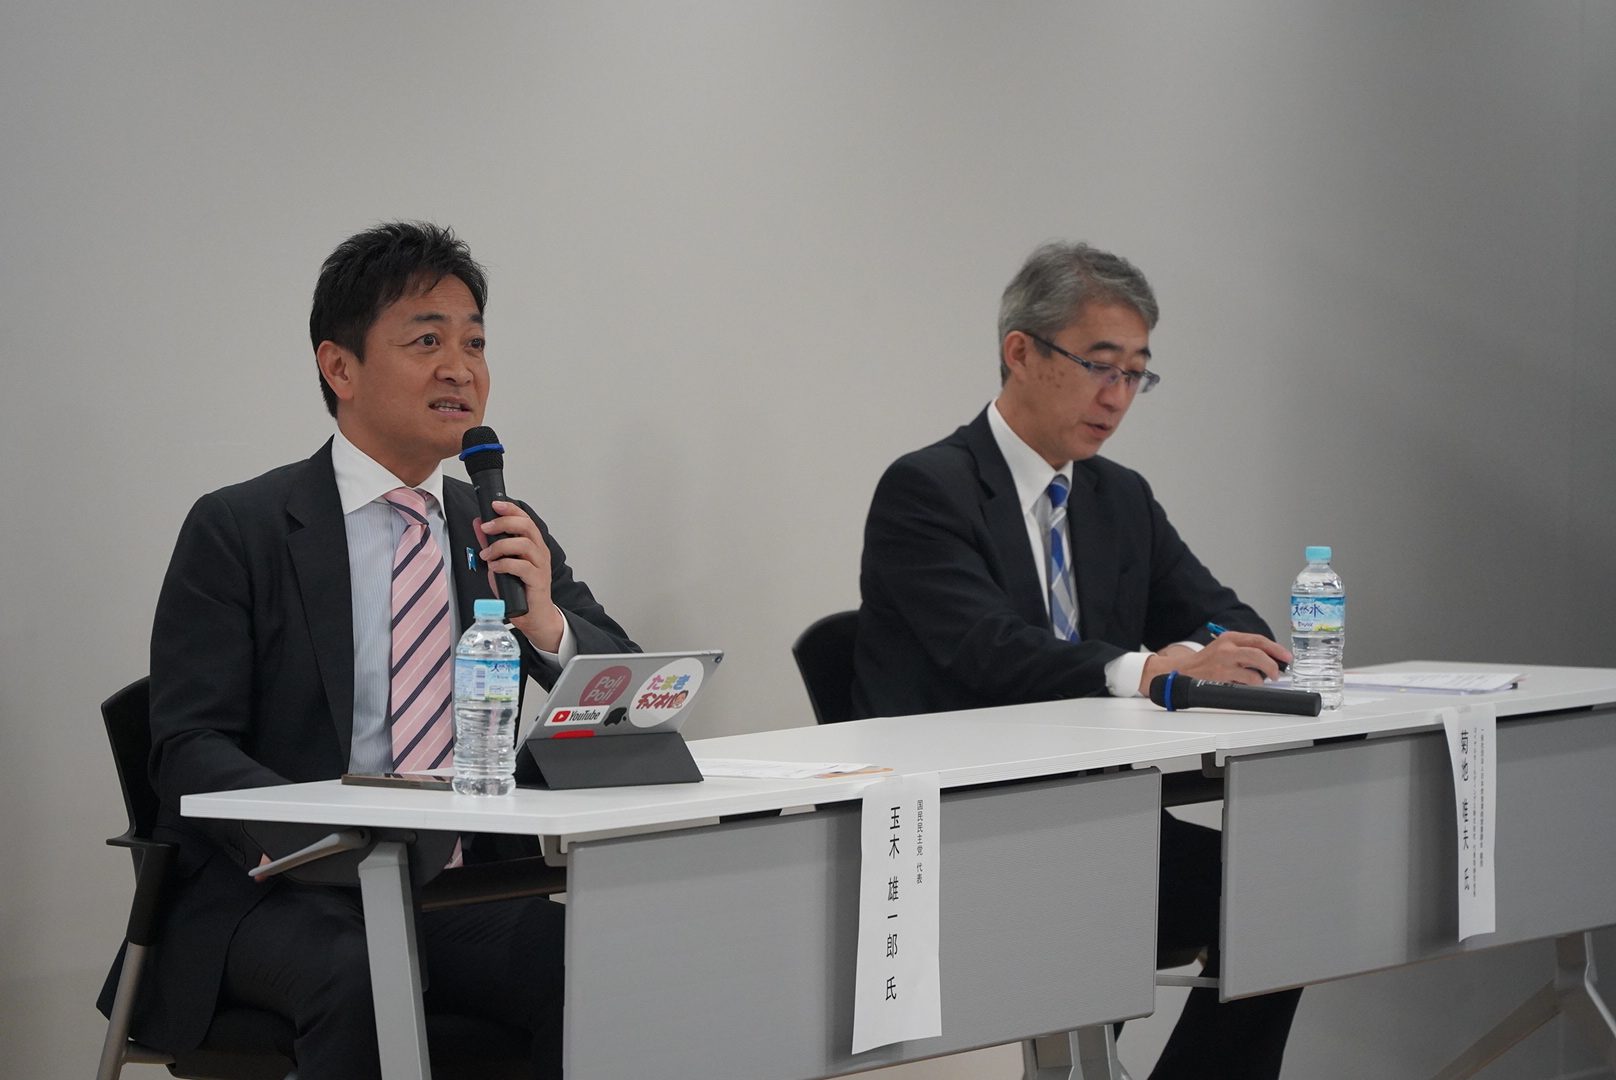 玉木代表が「日本飲食業経営審議会」主催のトークセッションに登壇